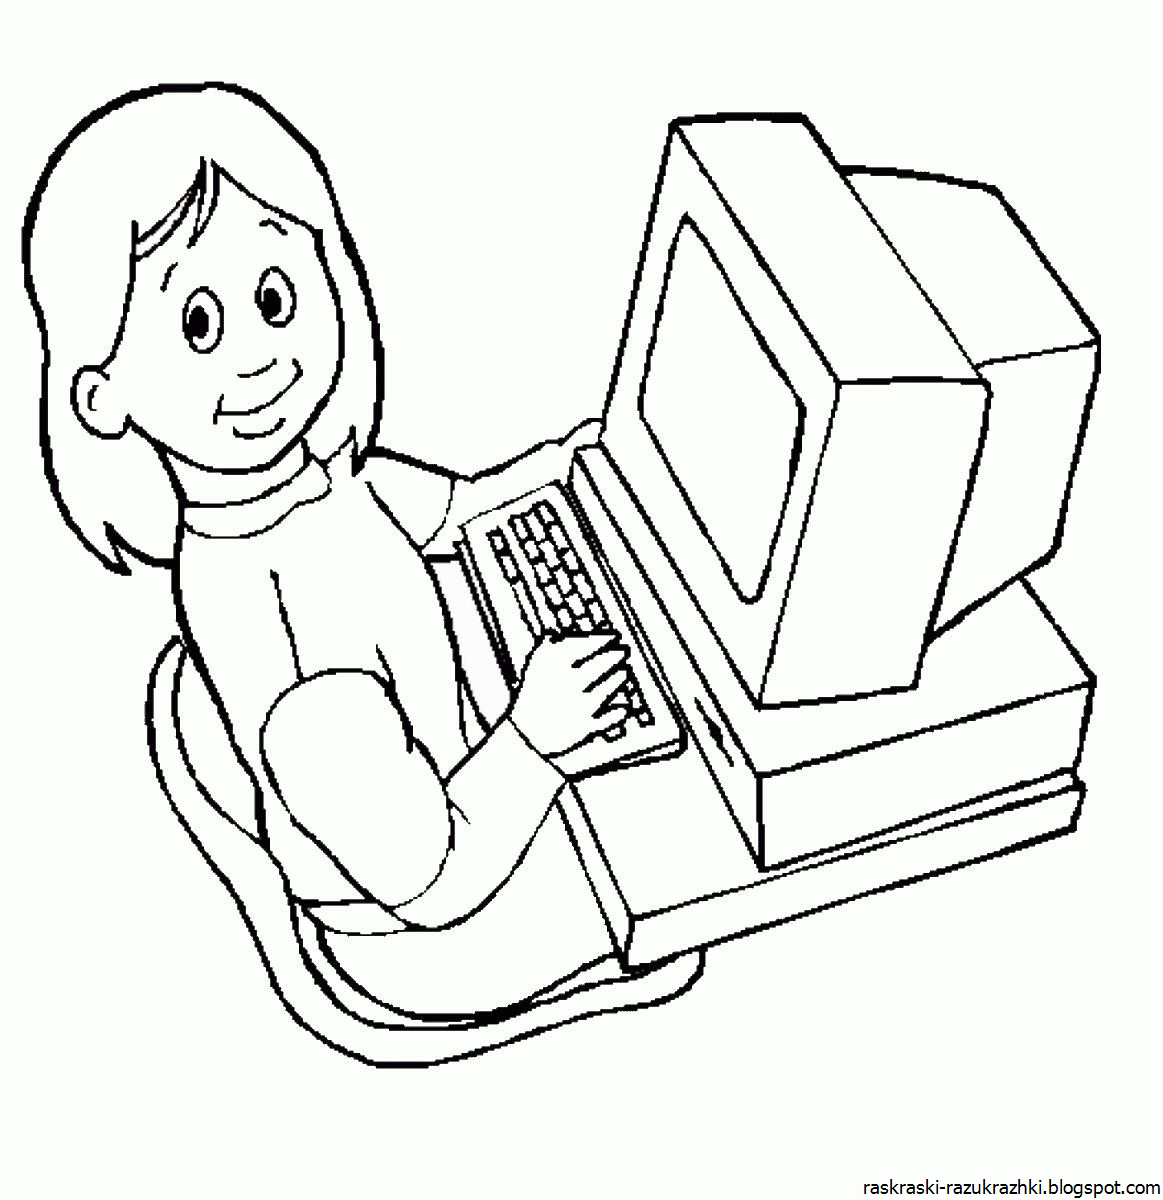 Компьютер раскраска распечатать. Компьютер раскраска для детей. Компьютер для раскрашивания для детей. Рисование на компьютере для детей. Раскраска для детей накомпюторе.